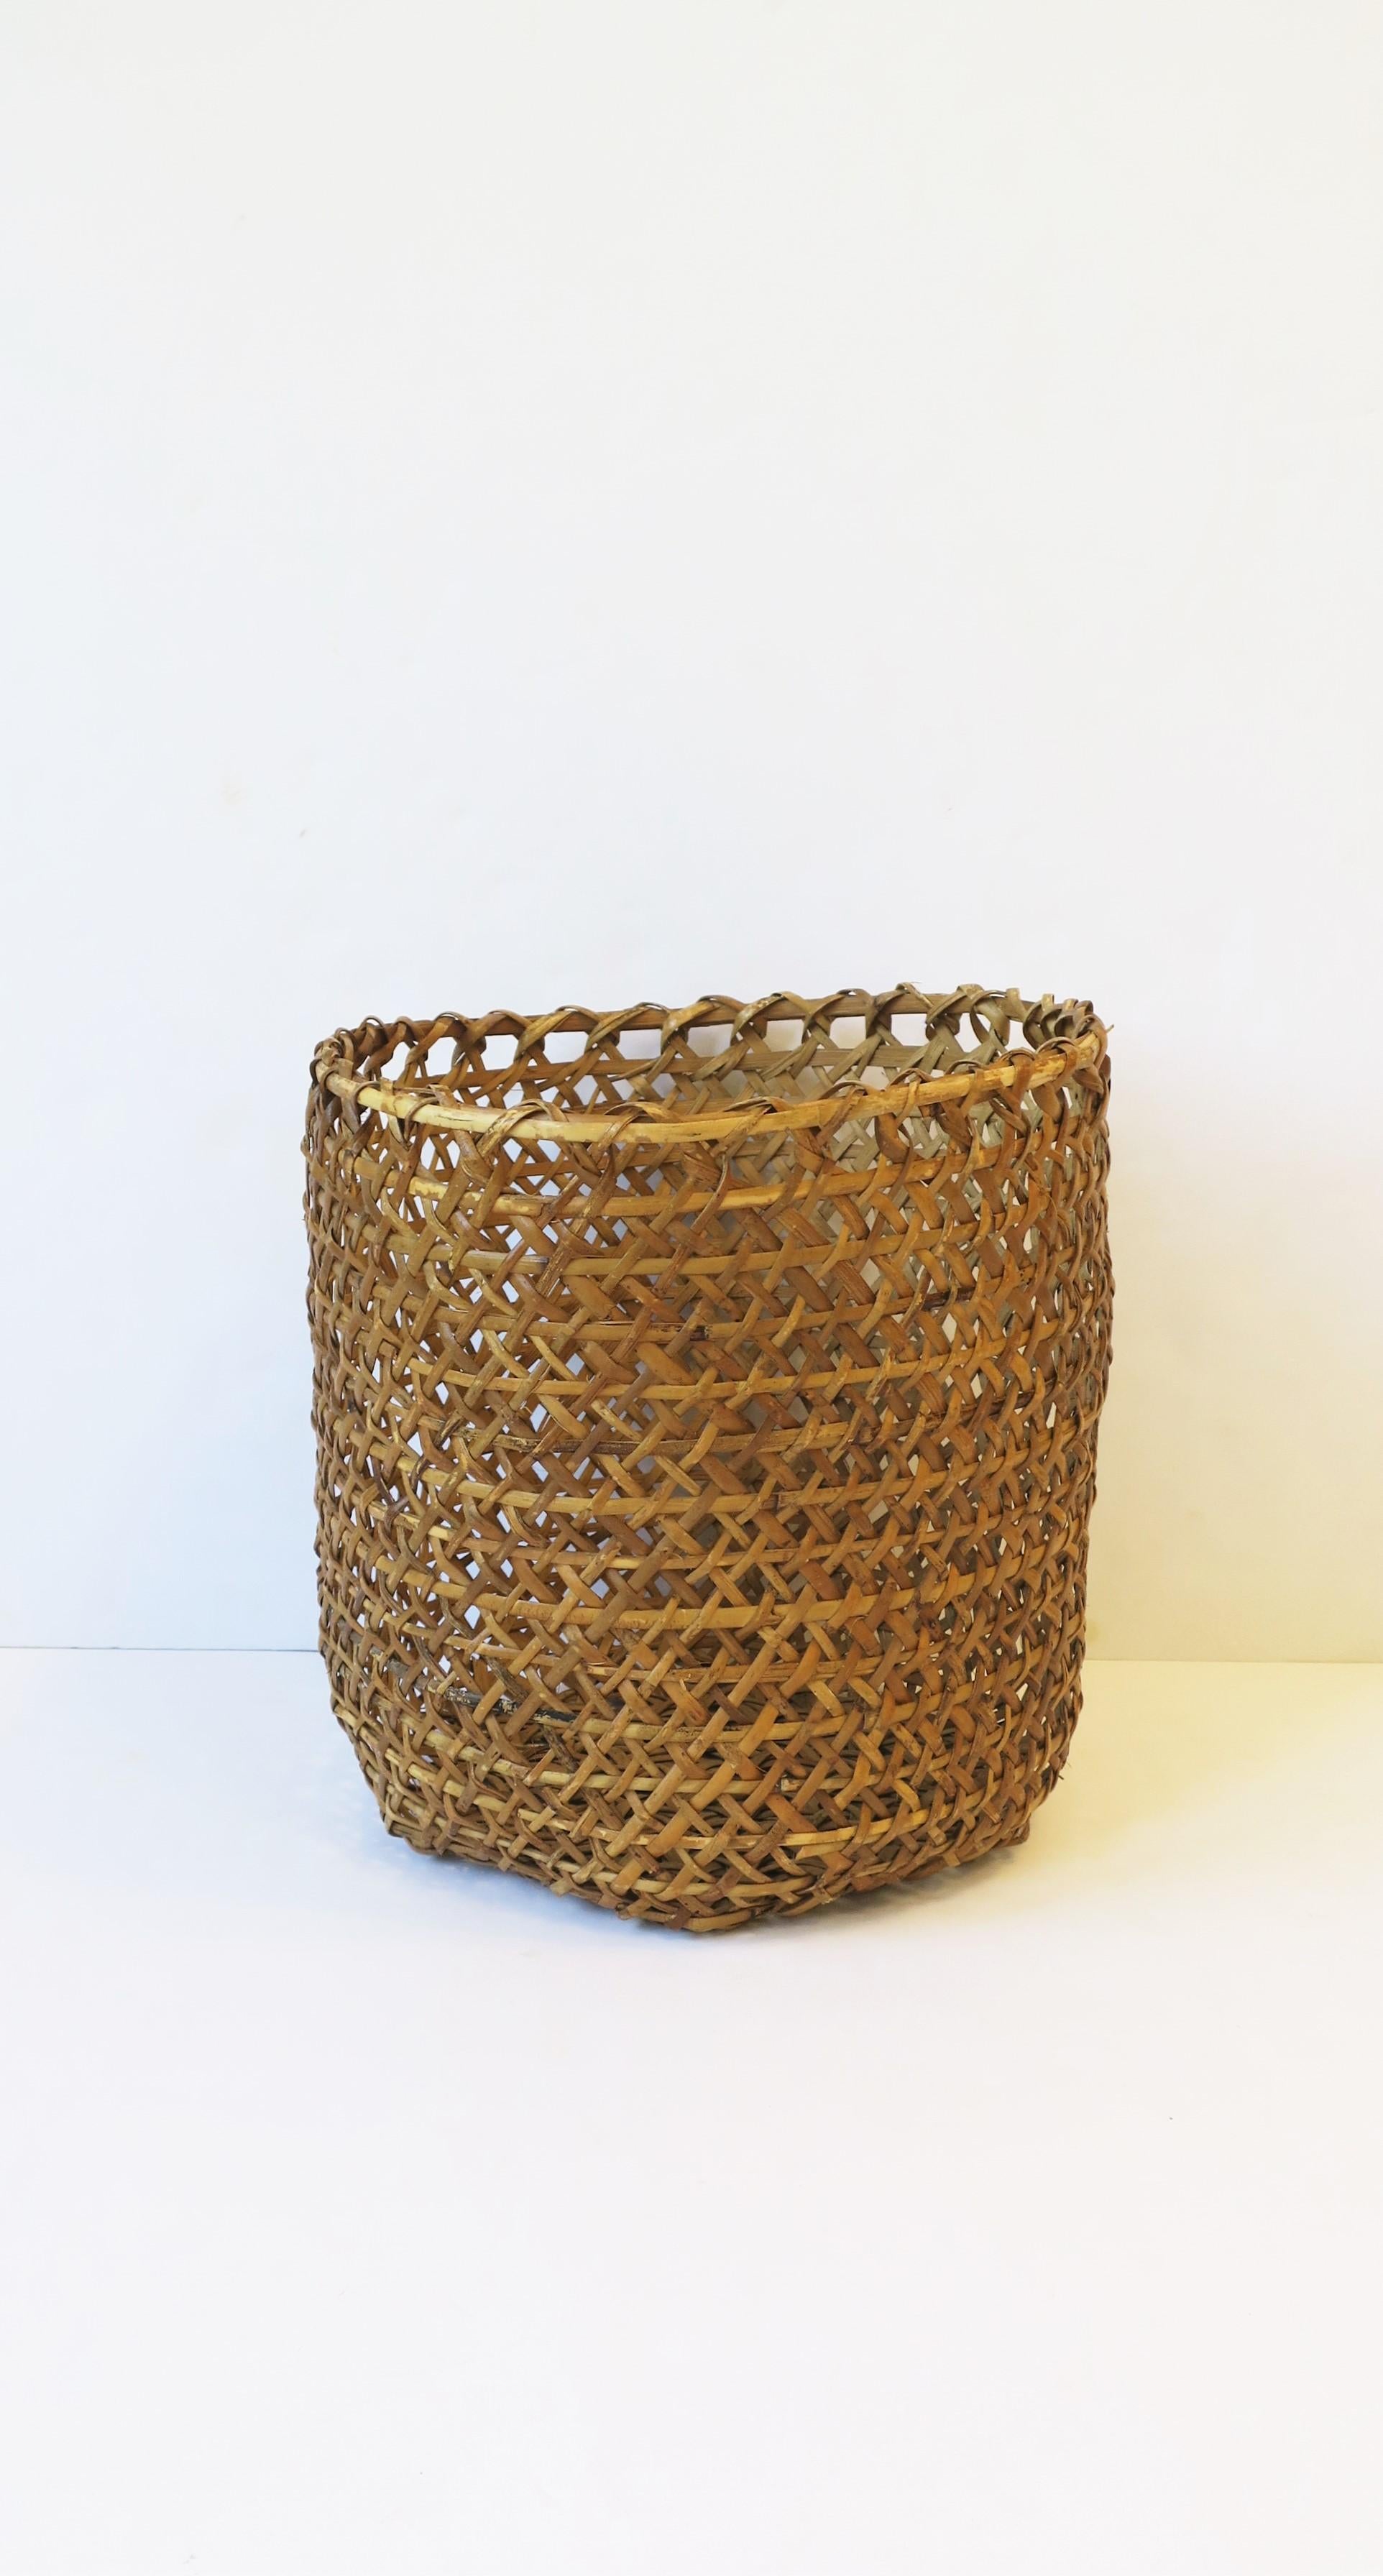 Vintage Wicker Basket Cachepot or Wastebasket Trash Can 3